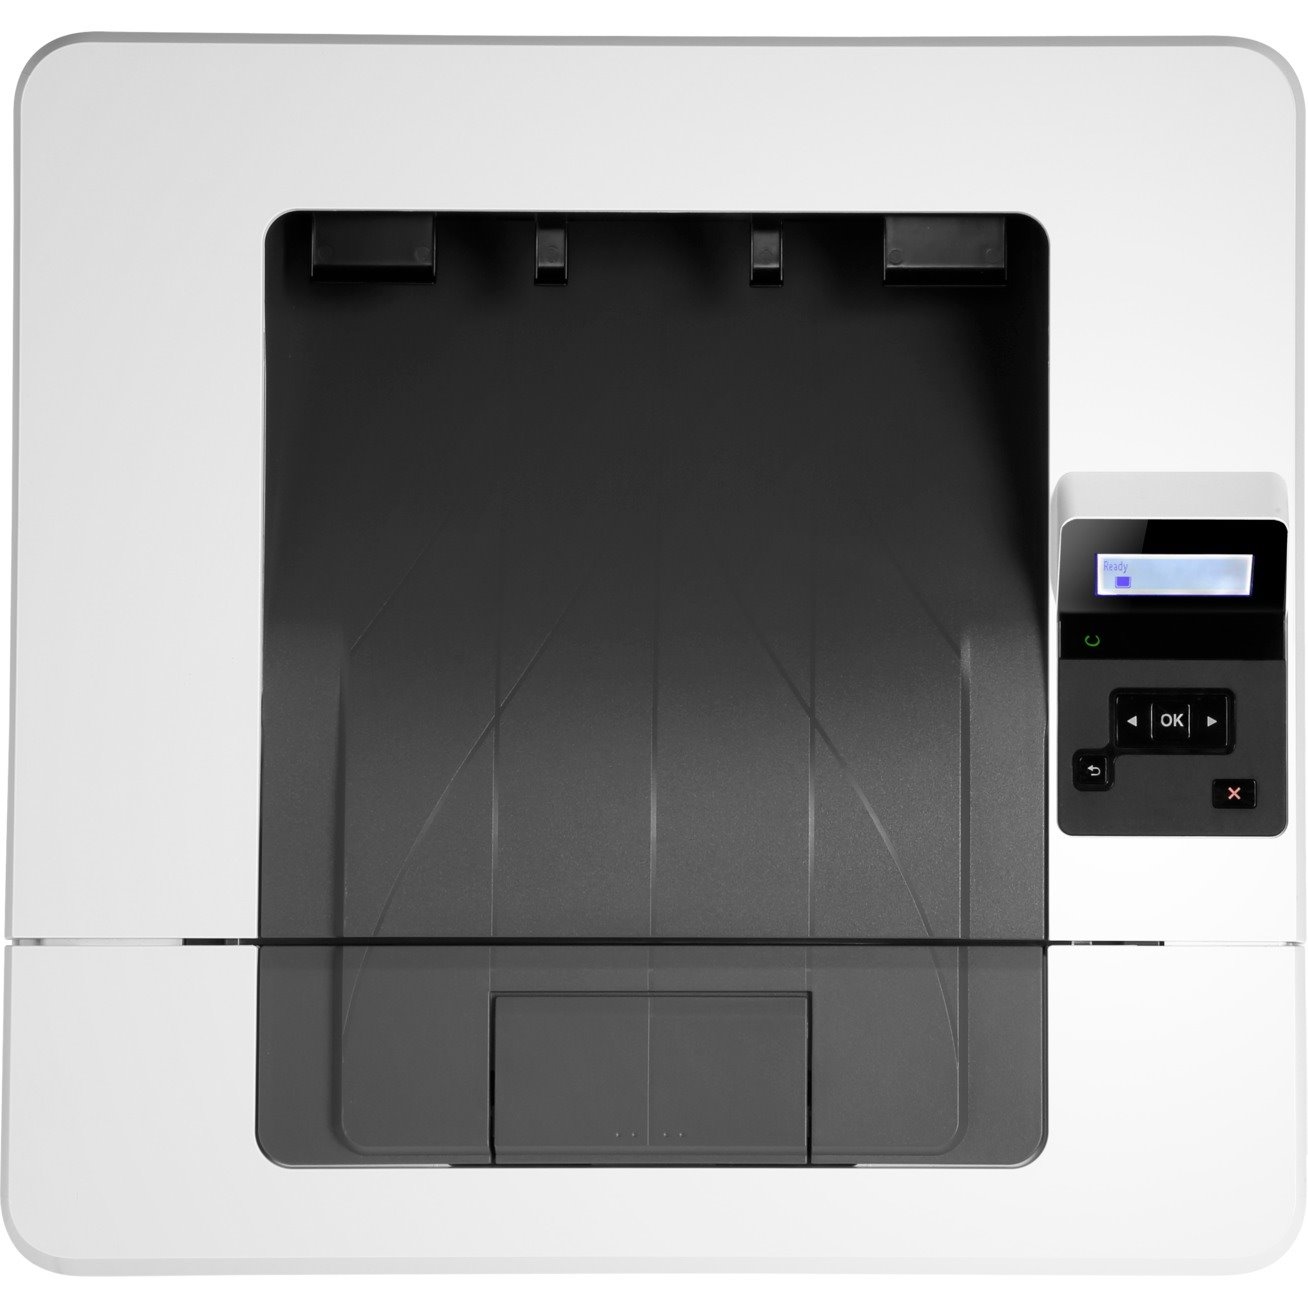 HP LaserJet Pro M404 M404n Desktop Laser Printer - Monochrome